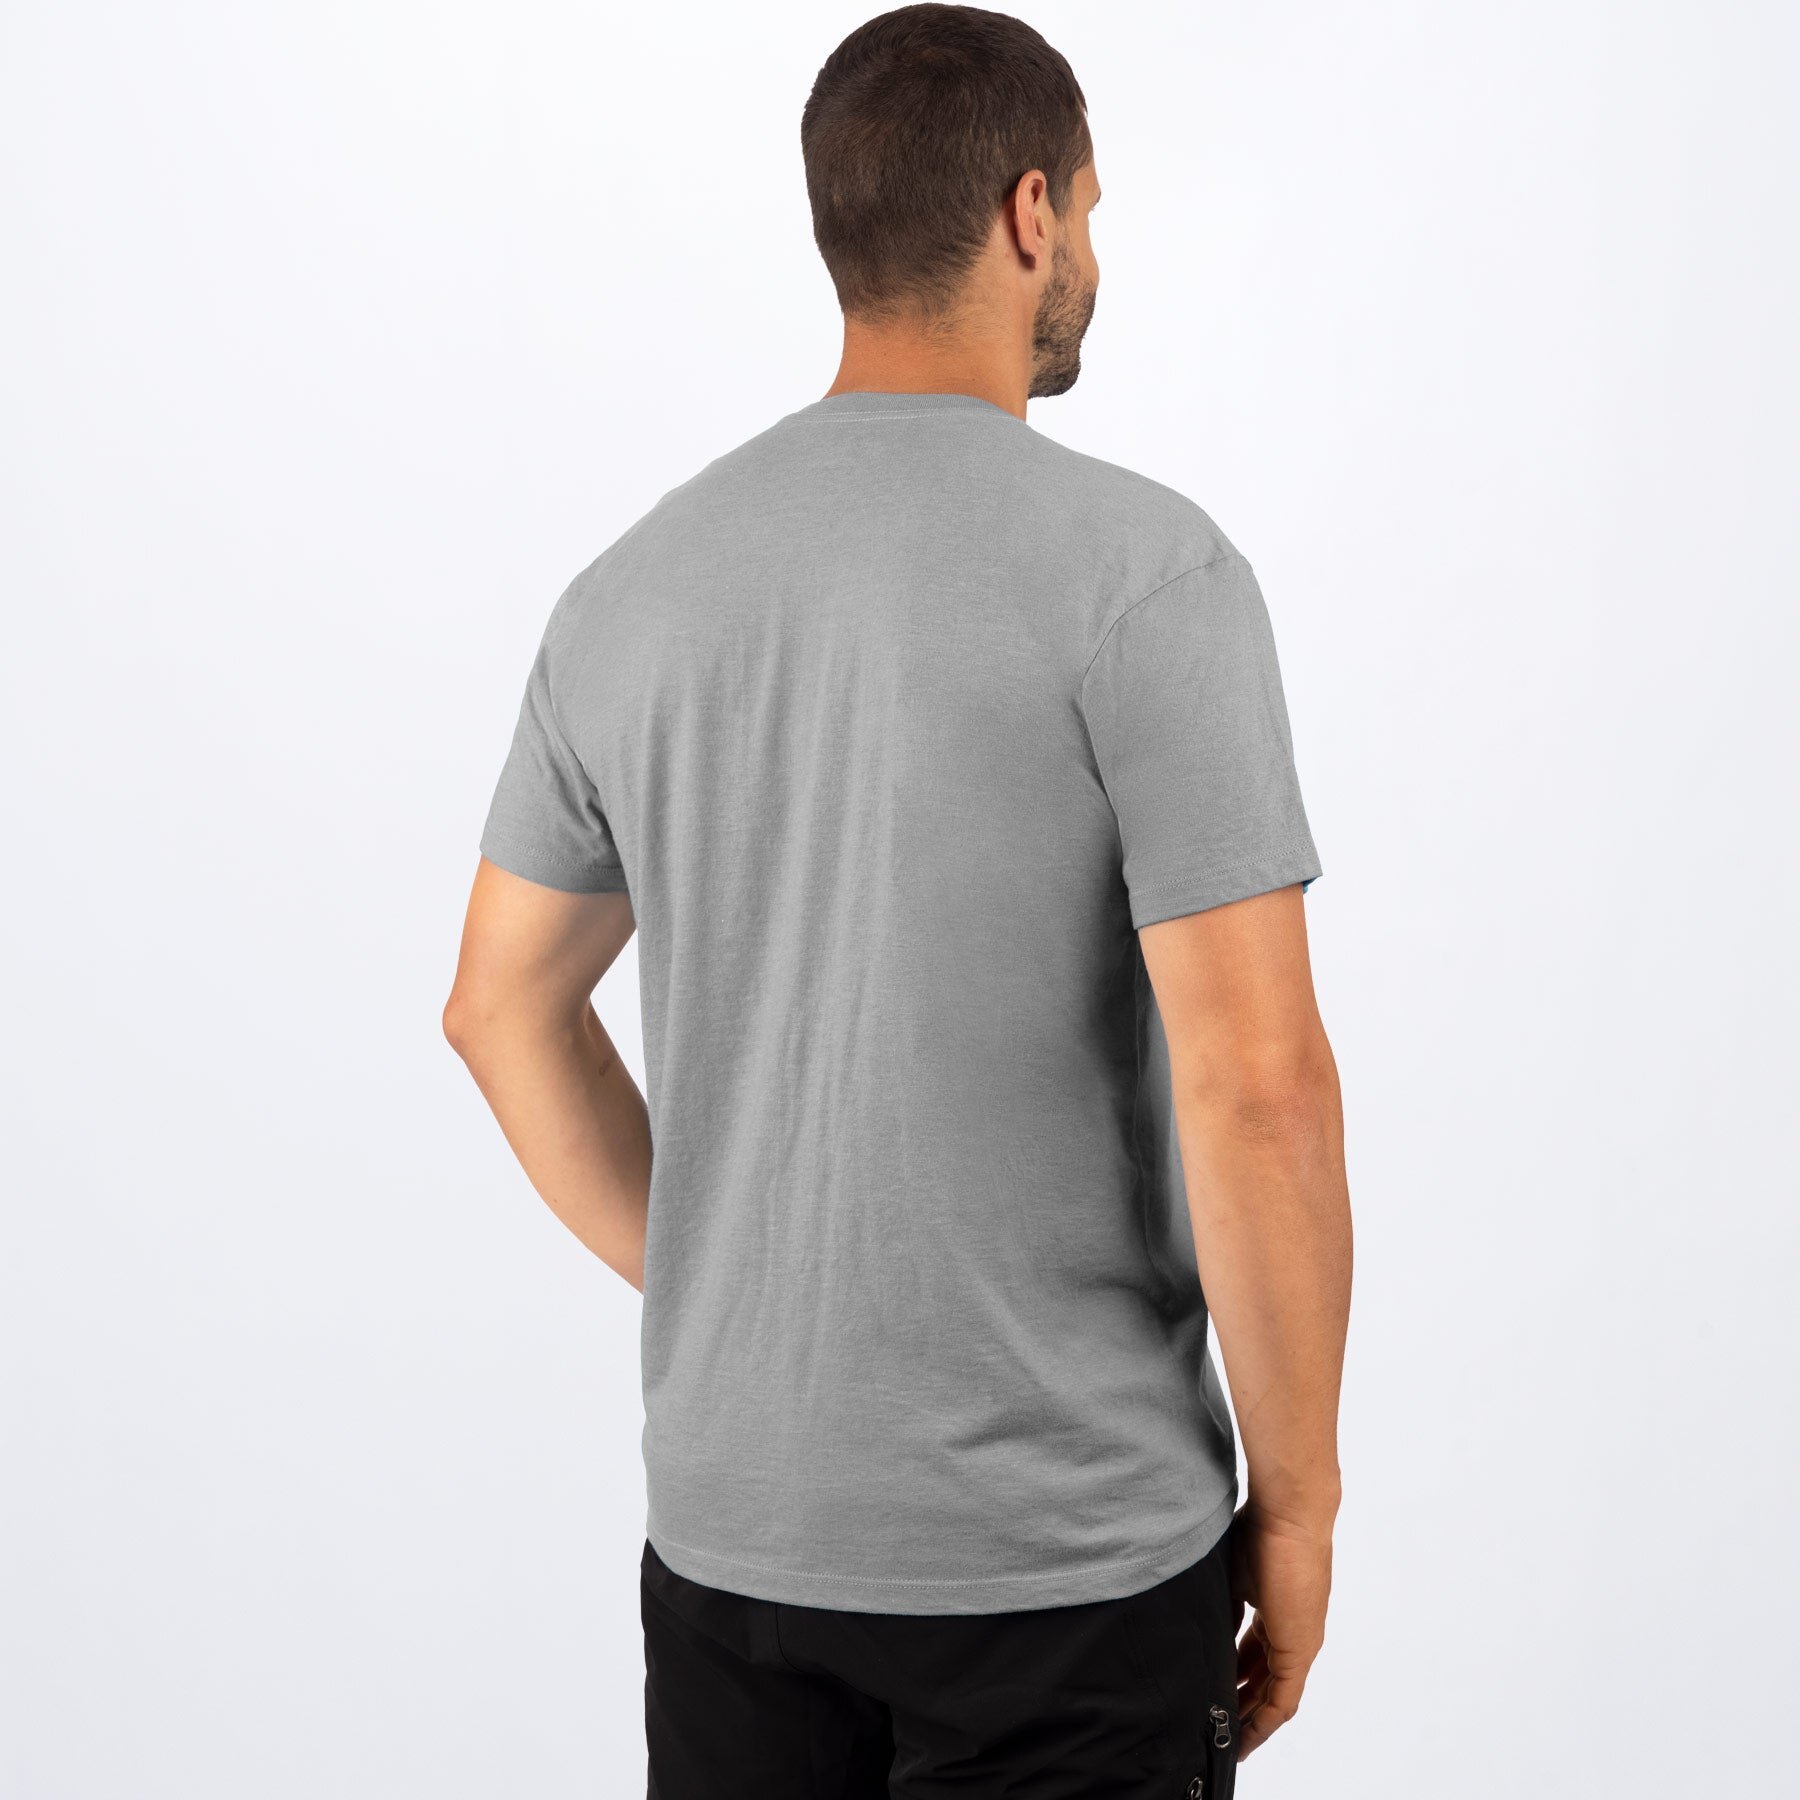 Men's Podium Premium T Shirt S Black/Grey